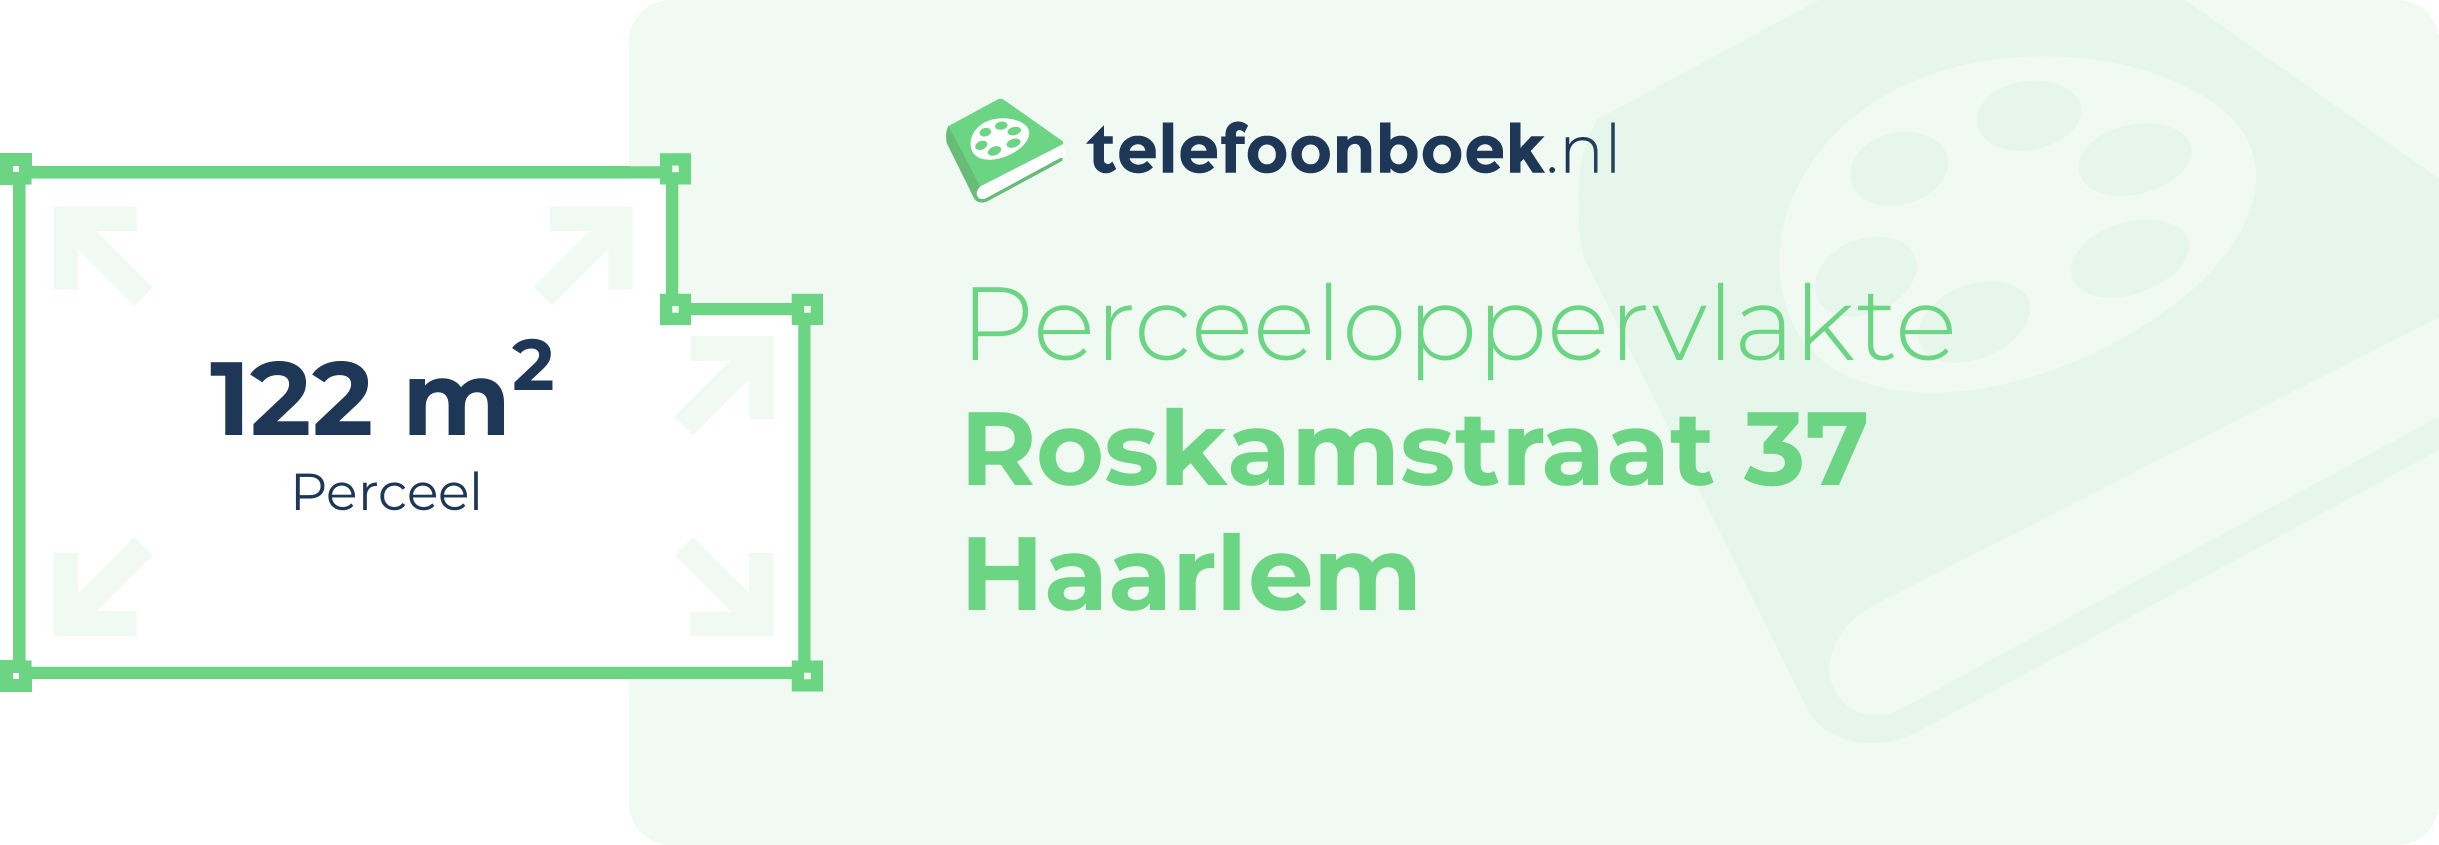 Perceeloppervlakte Roskamstraat 37 Haarlem